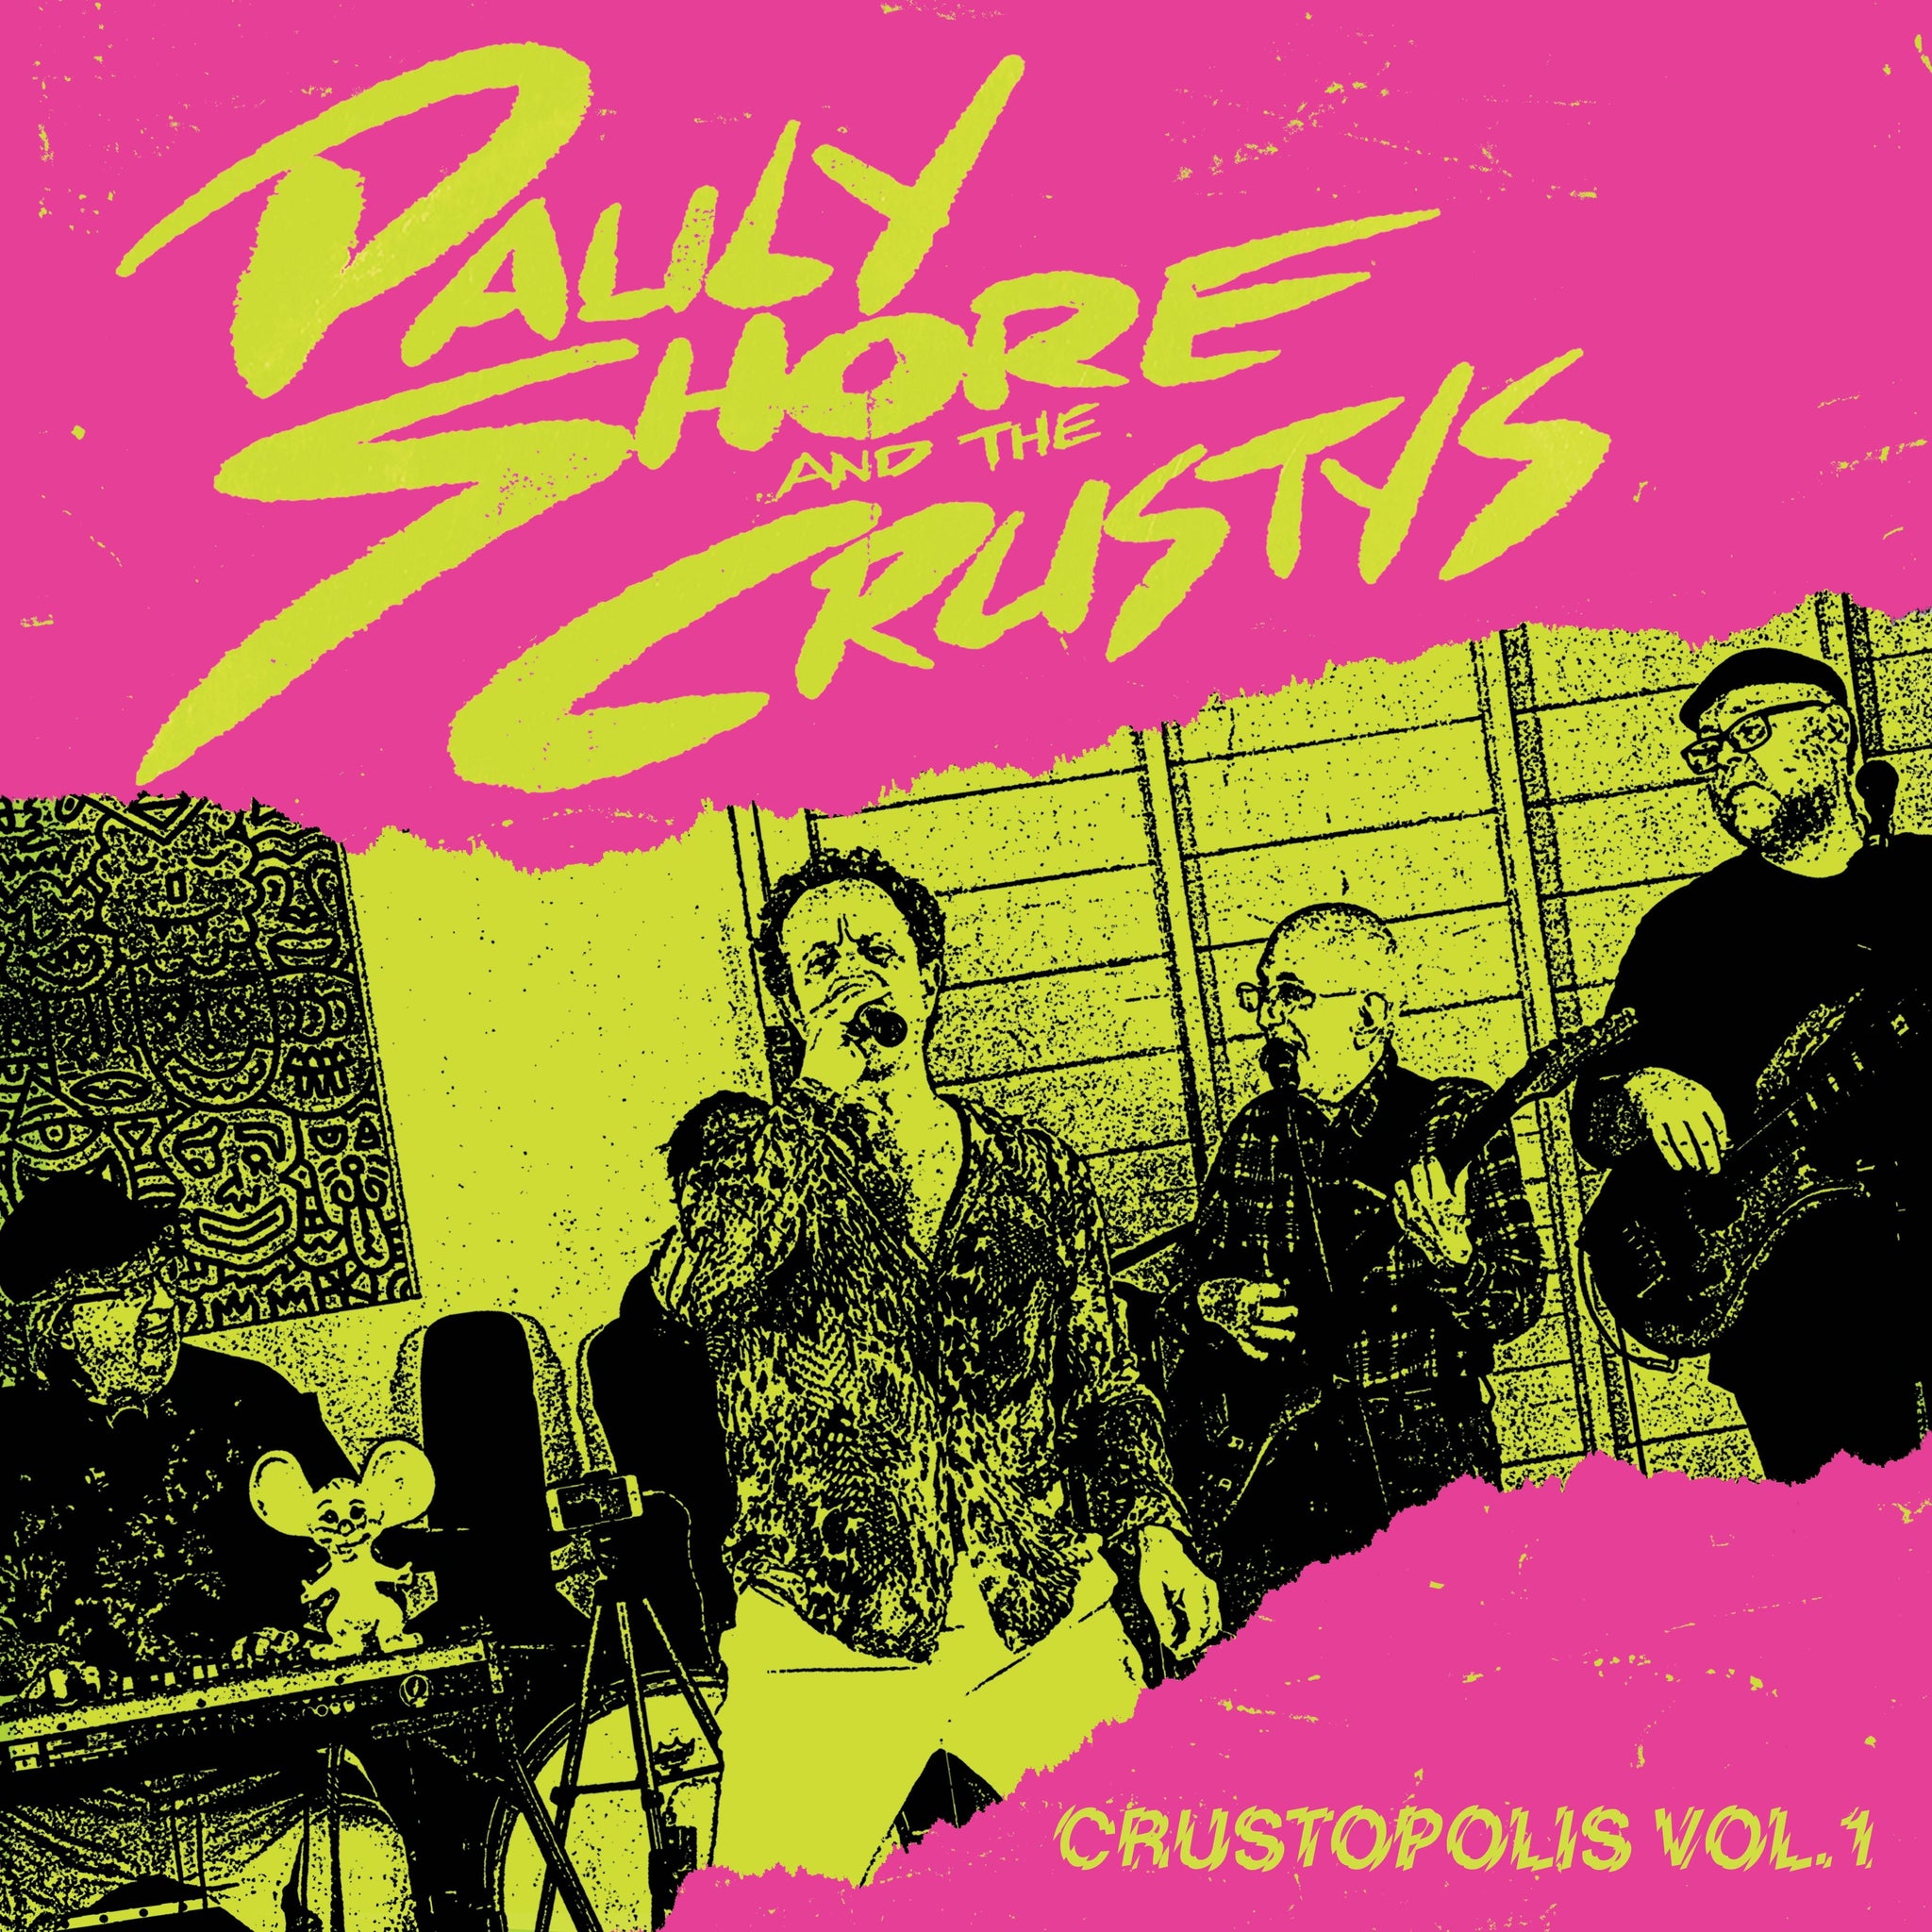 Pauly Shore and The Crustys - Crustopolis Vol. 1 (RSD2024)